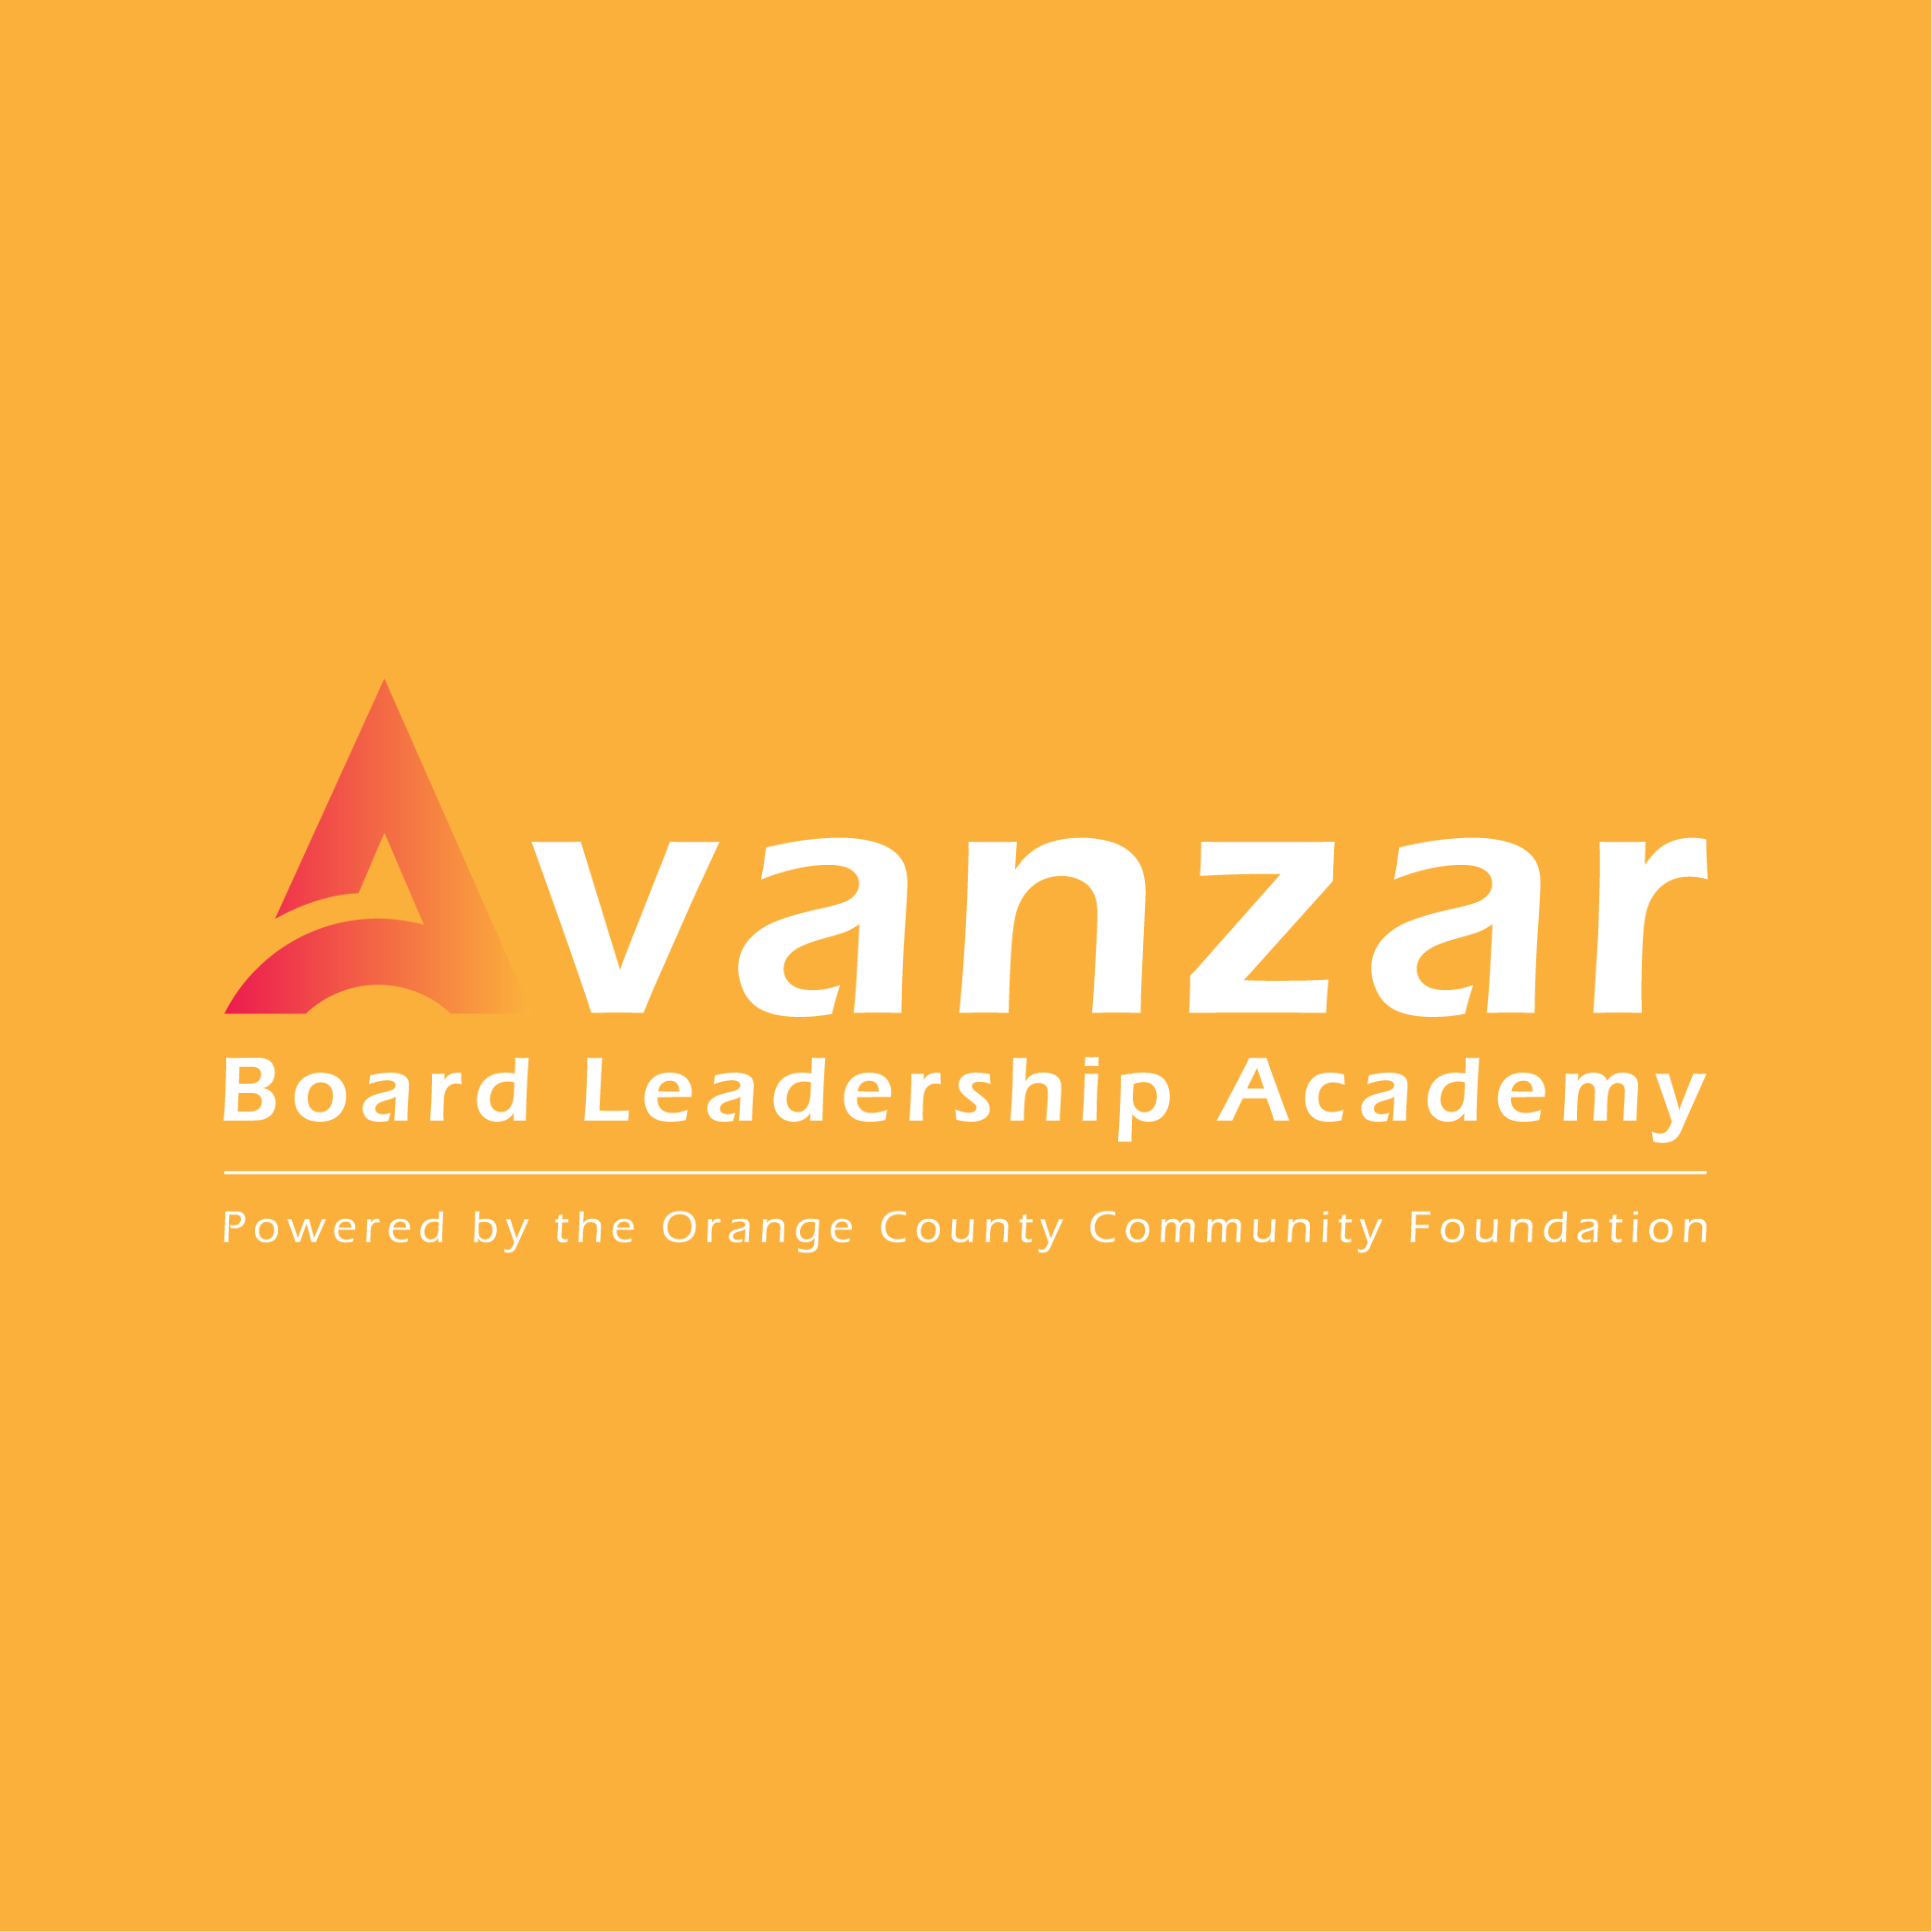 Avanzar Board Leadership Academy